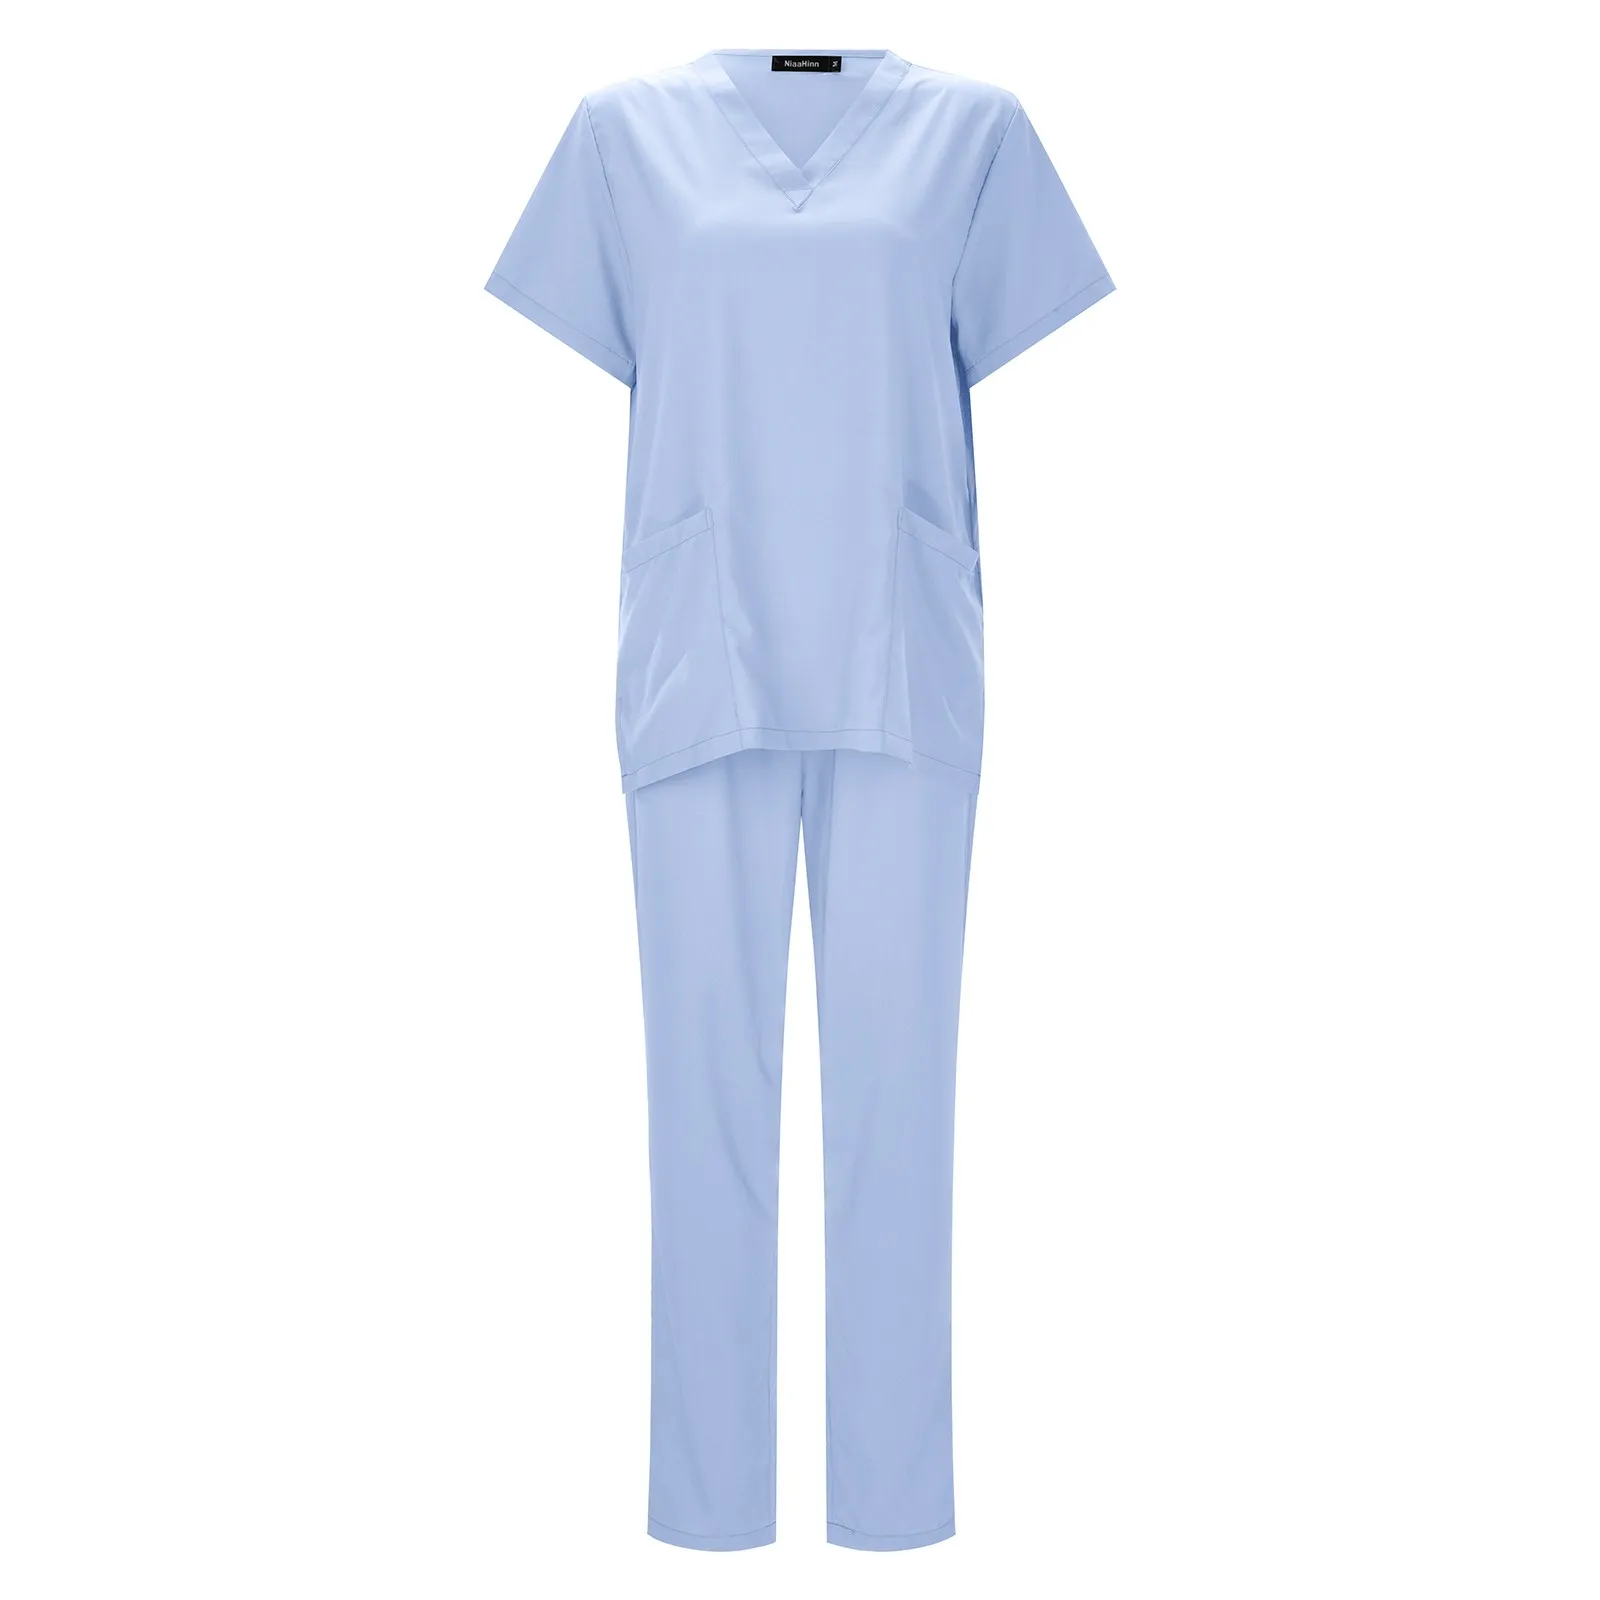 Le donne all'ingrosso indossano tute Scrub medico ospedaliero uniforme da lavoro medico chirurgico multicolore Unisex accessori per infermiere uniformi